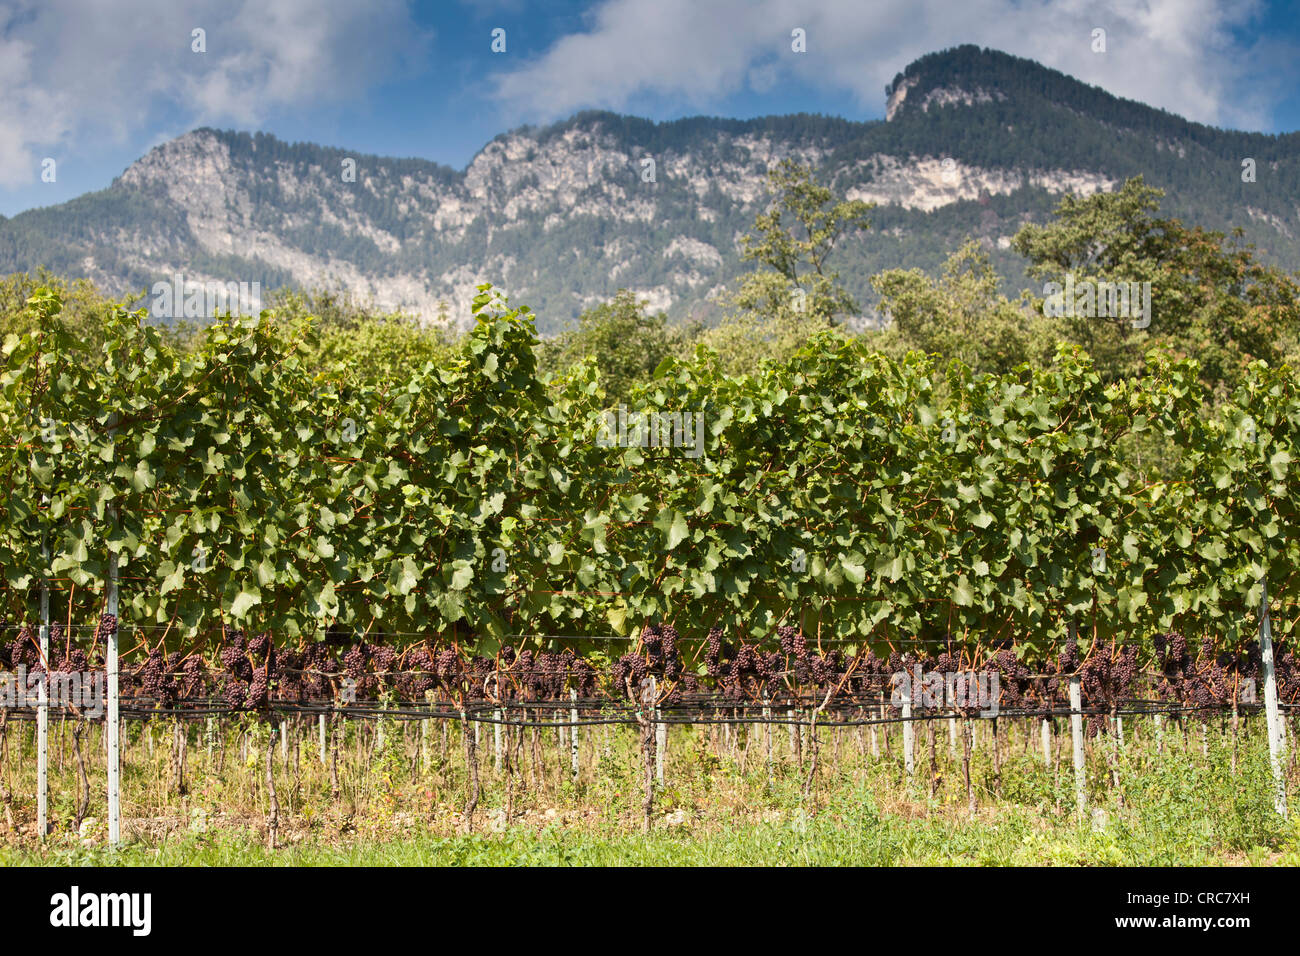 Vines in rural vineyard Stock Photo